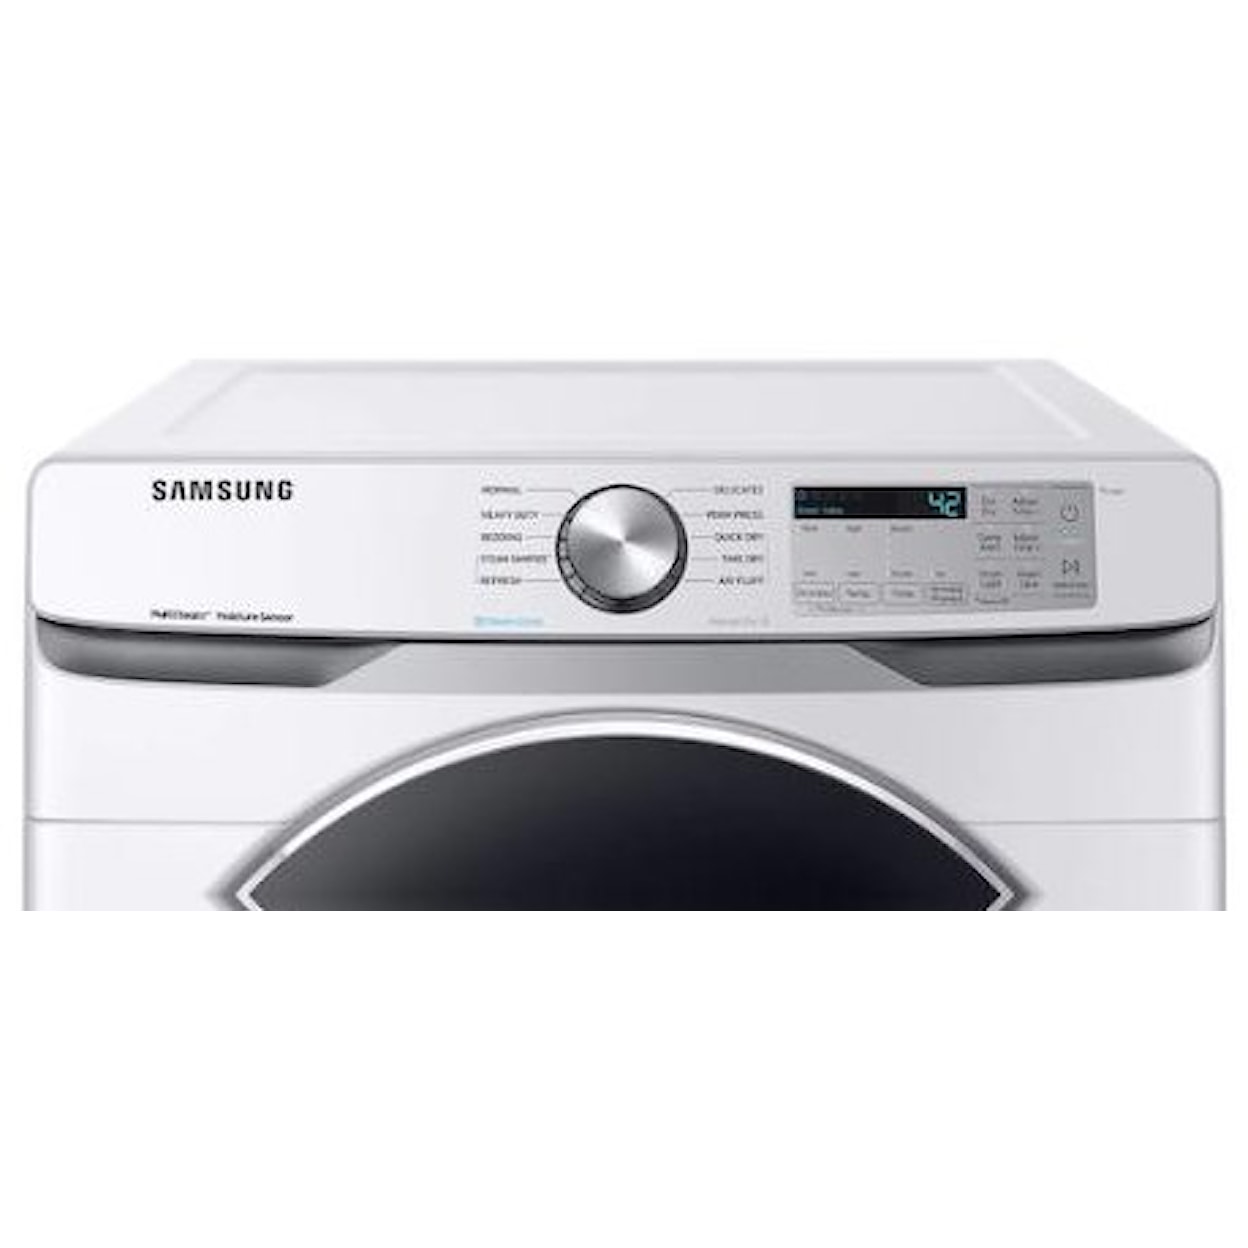 Samsung Appliances Dryers- Samsung 7.5 cu ft Dryer